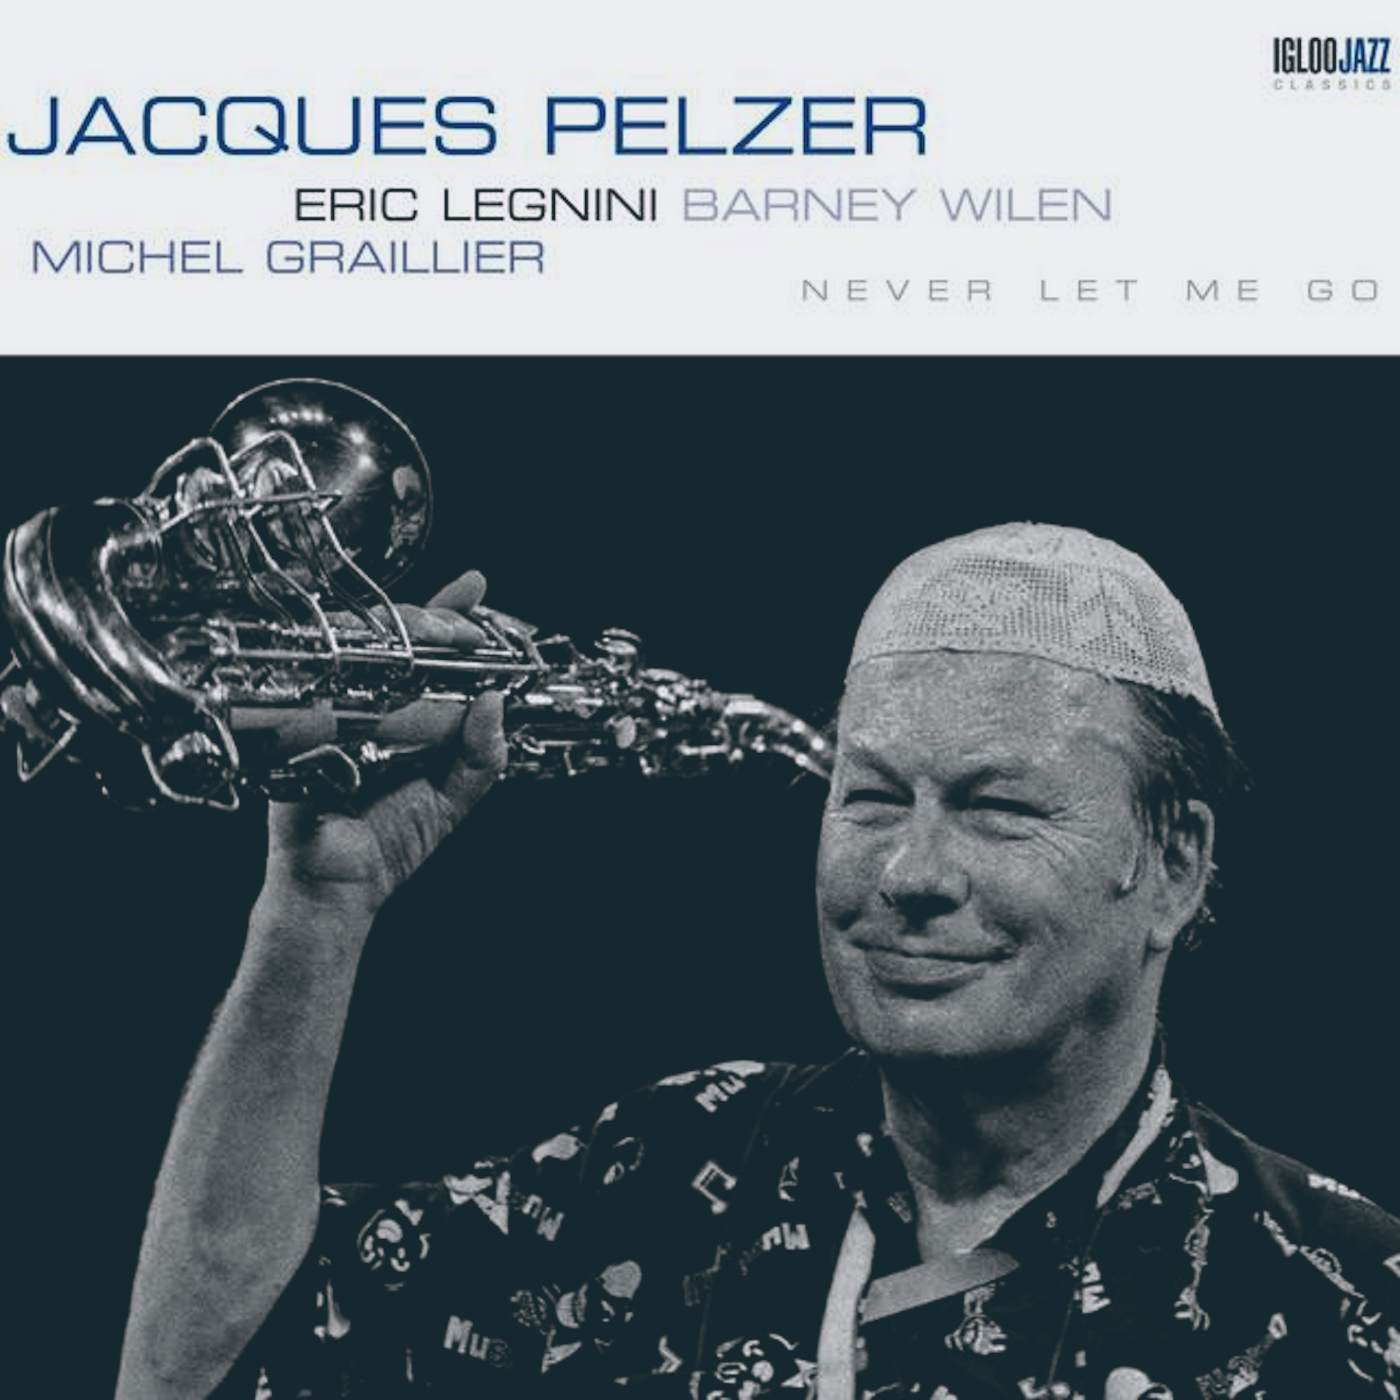 Jacques Pelzer